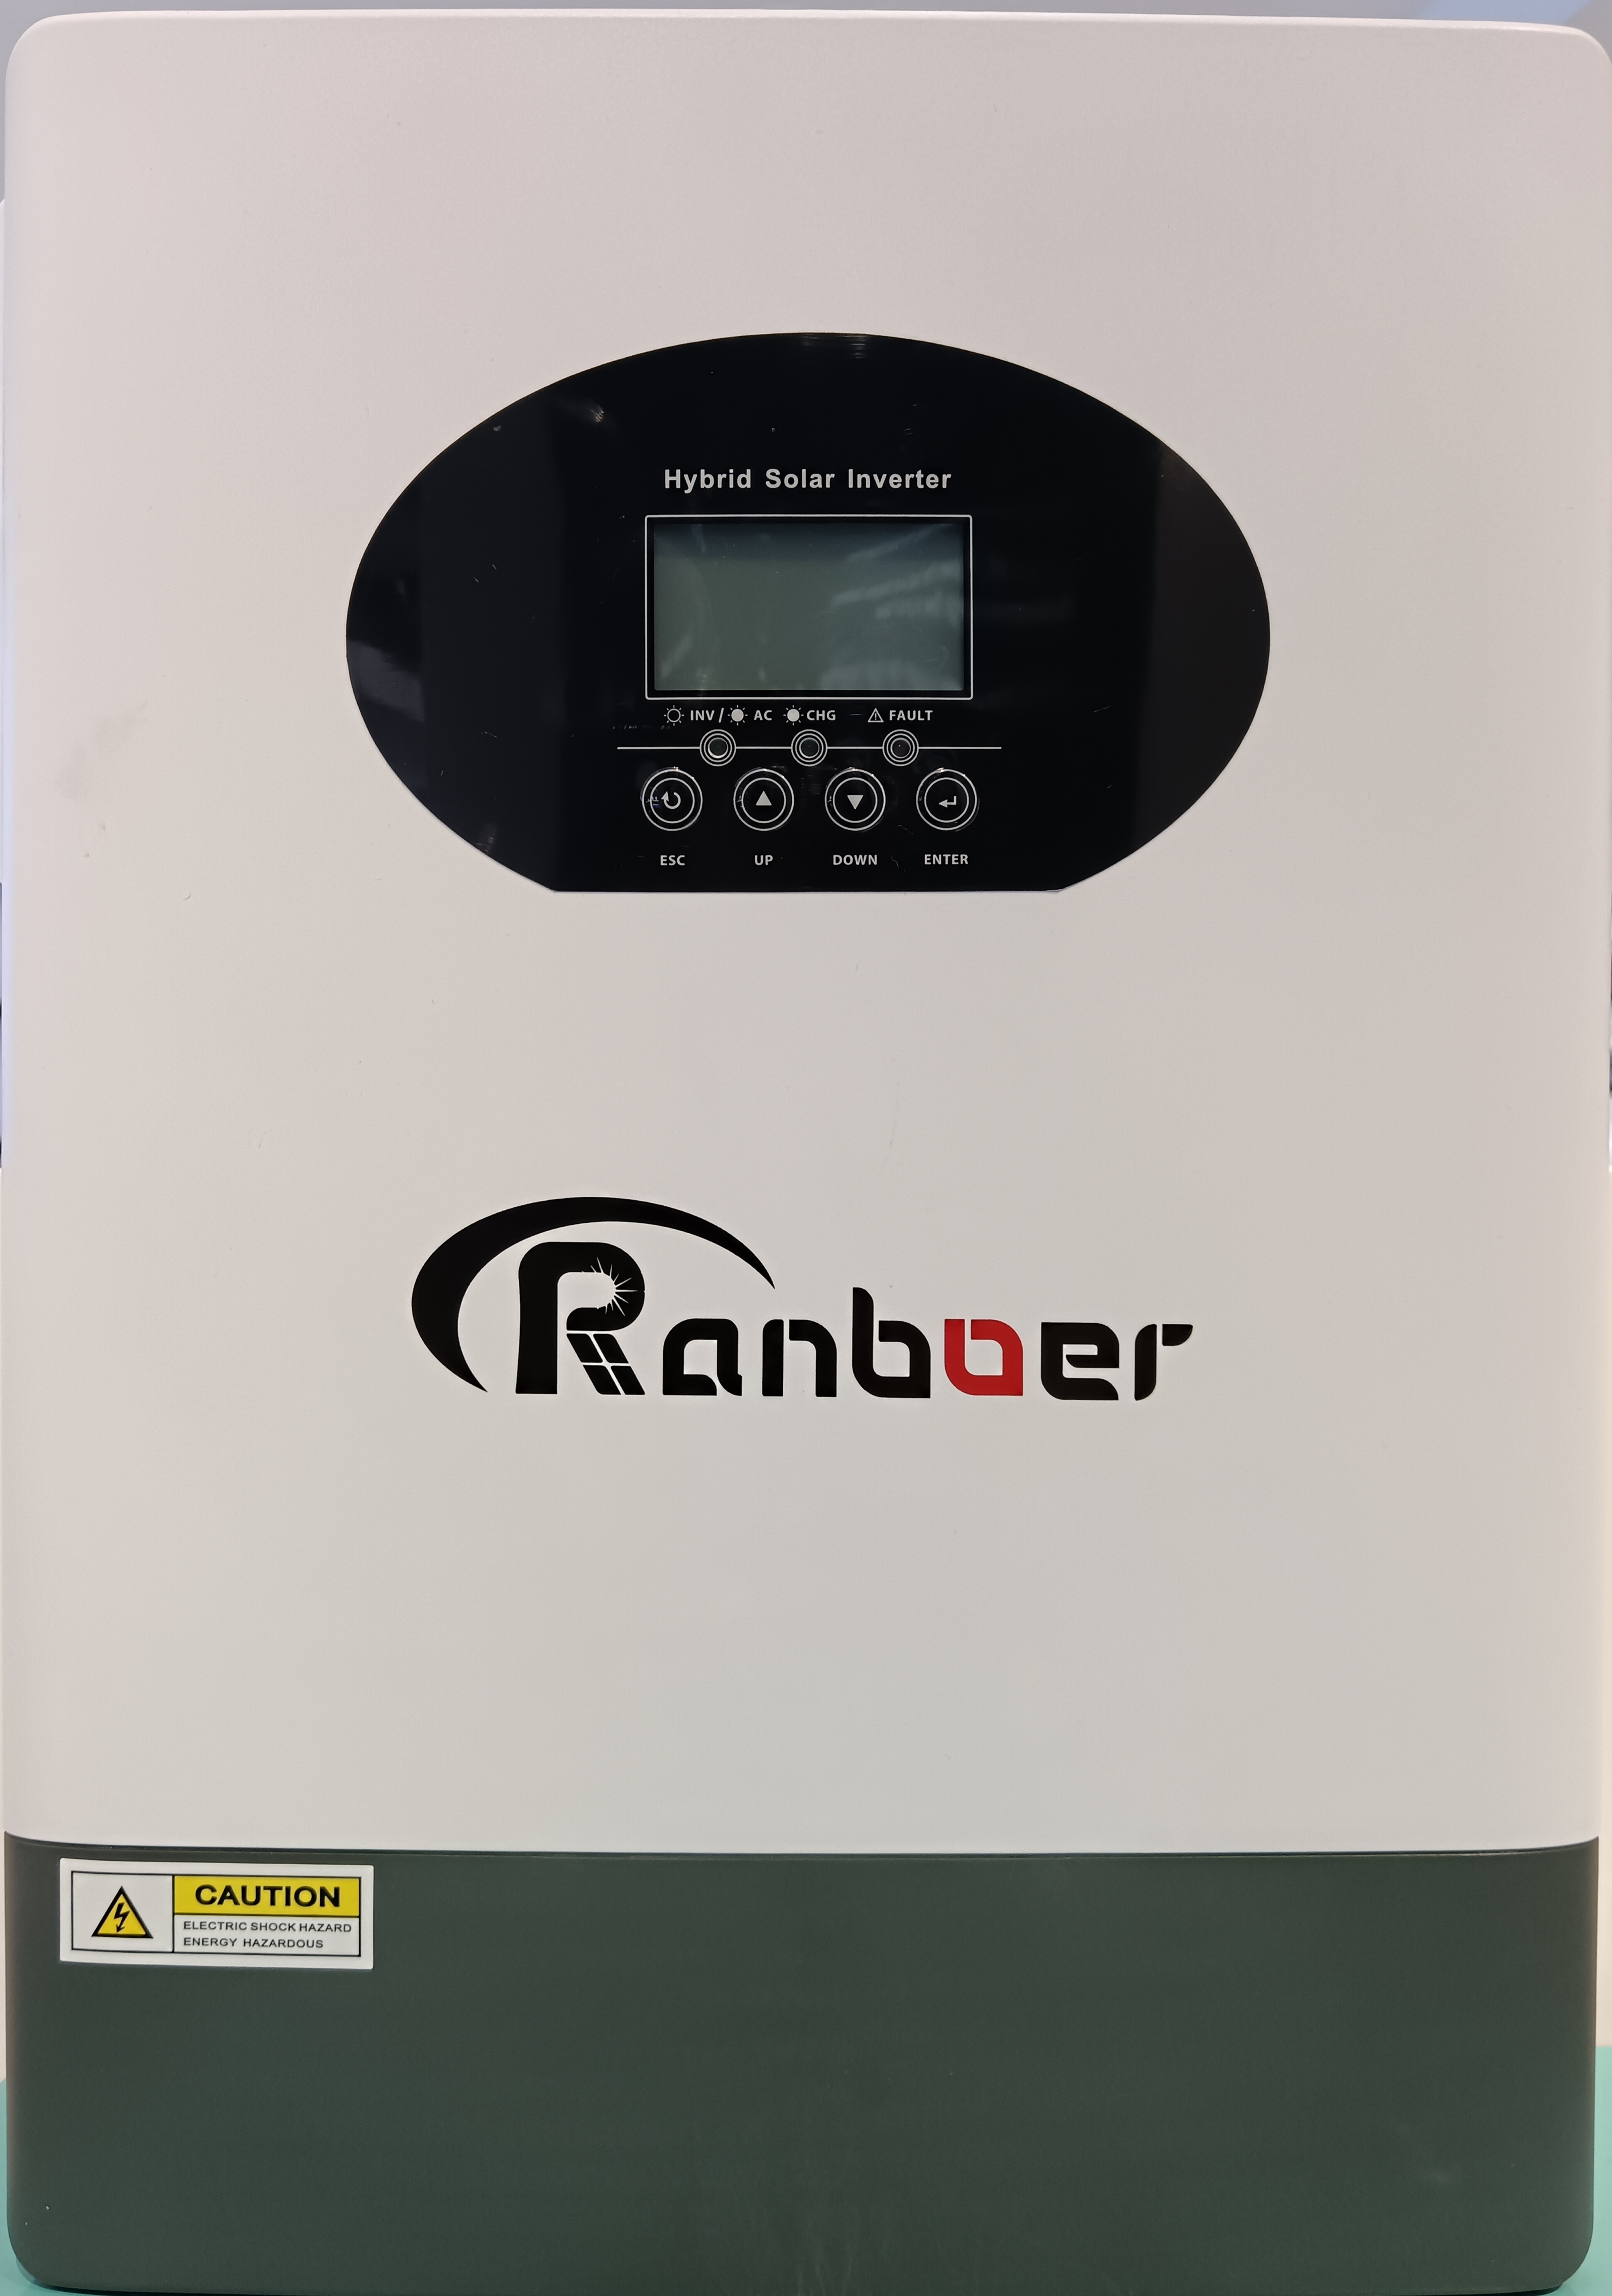 Ranboer润博离网逆变器5.5KW光伏转换器控制器一体机详情2